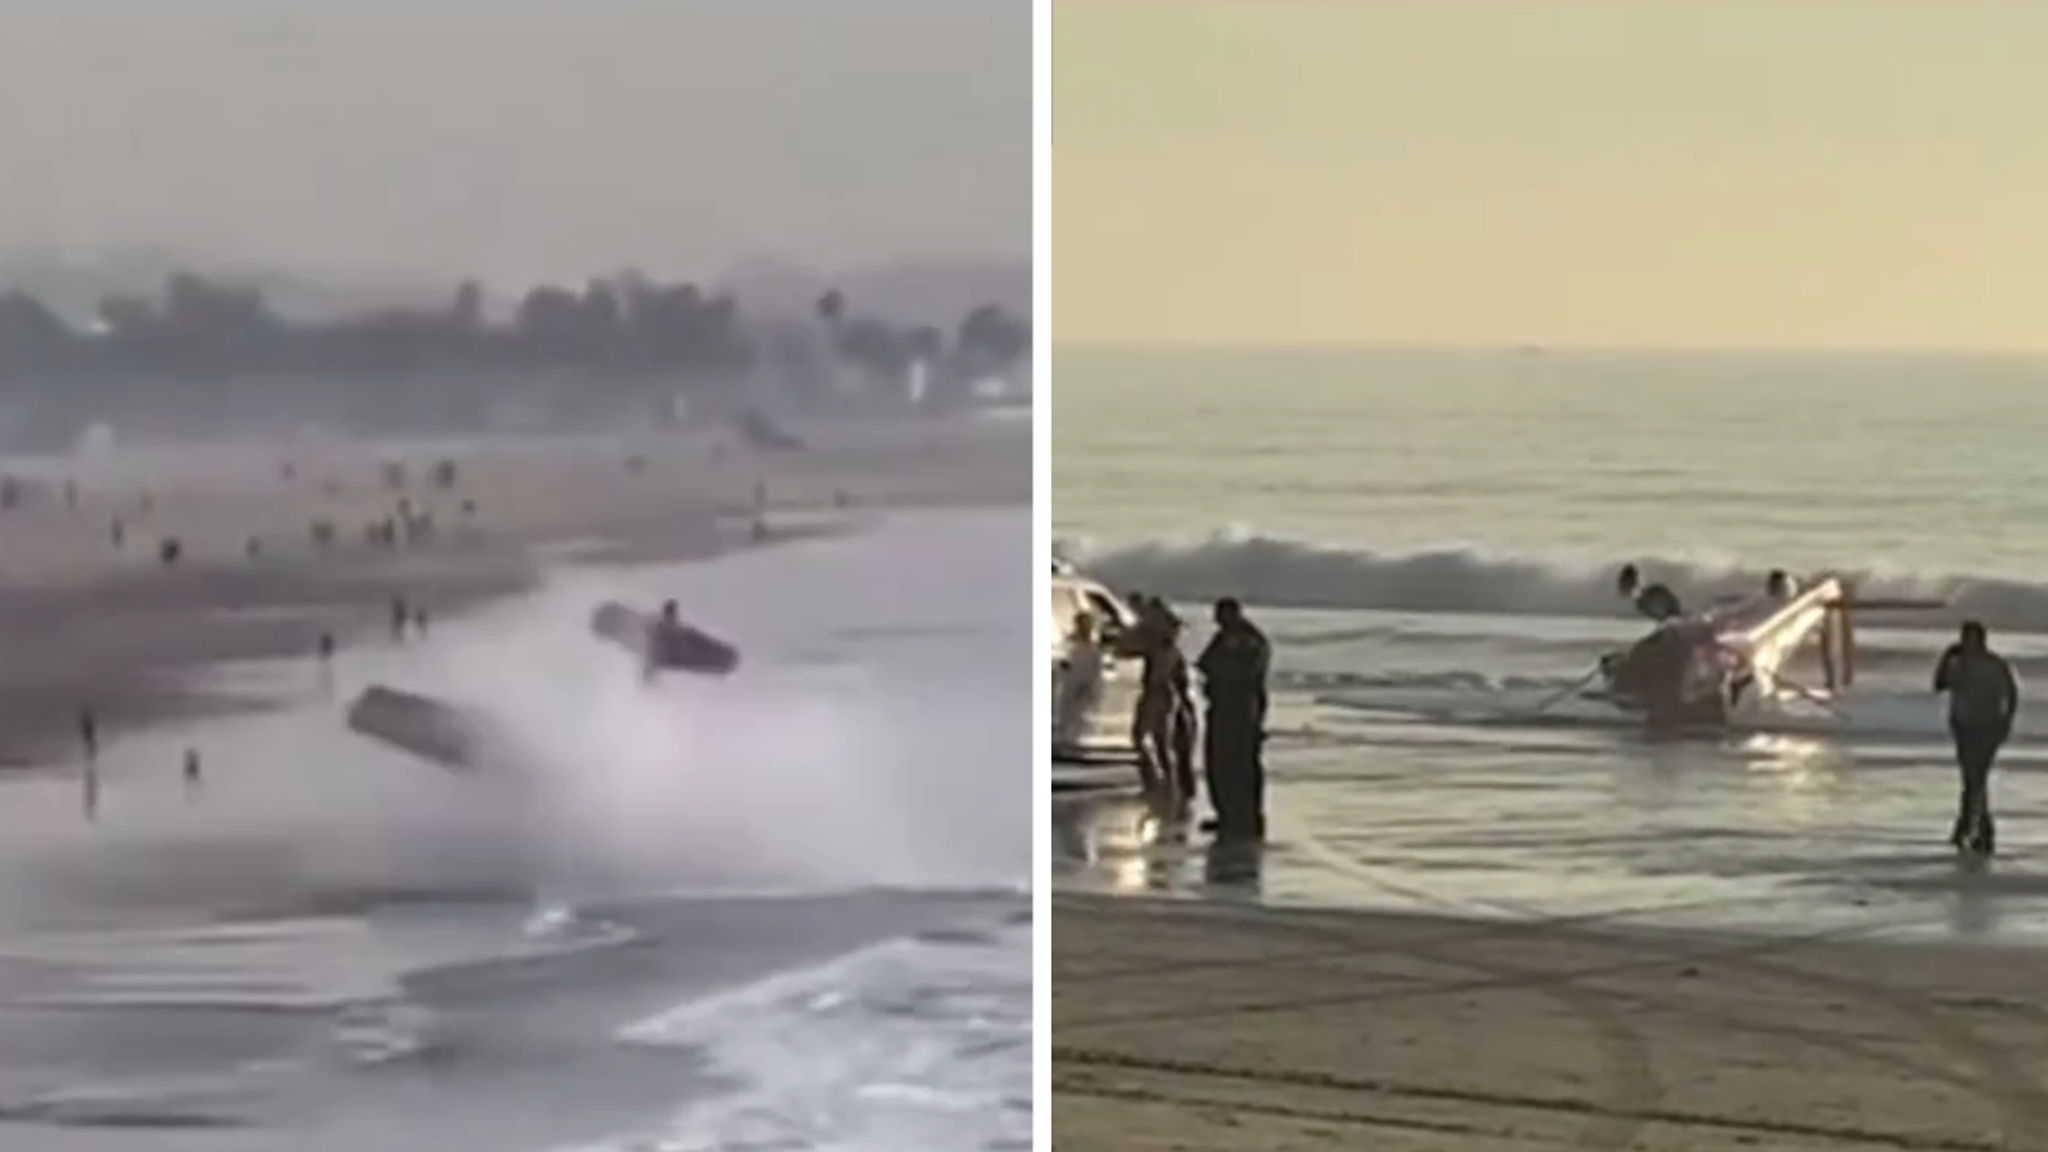 Nuevo video muestra fatal accidente de avión cerca del muelle de Santa Mónica